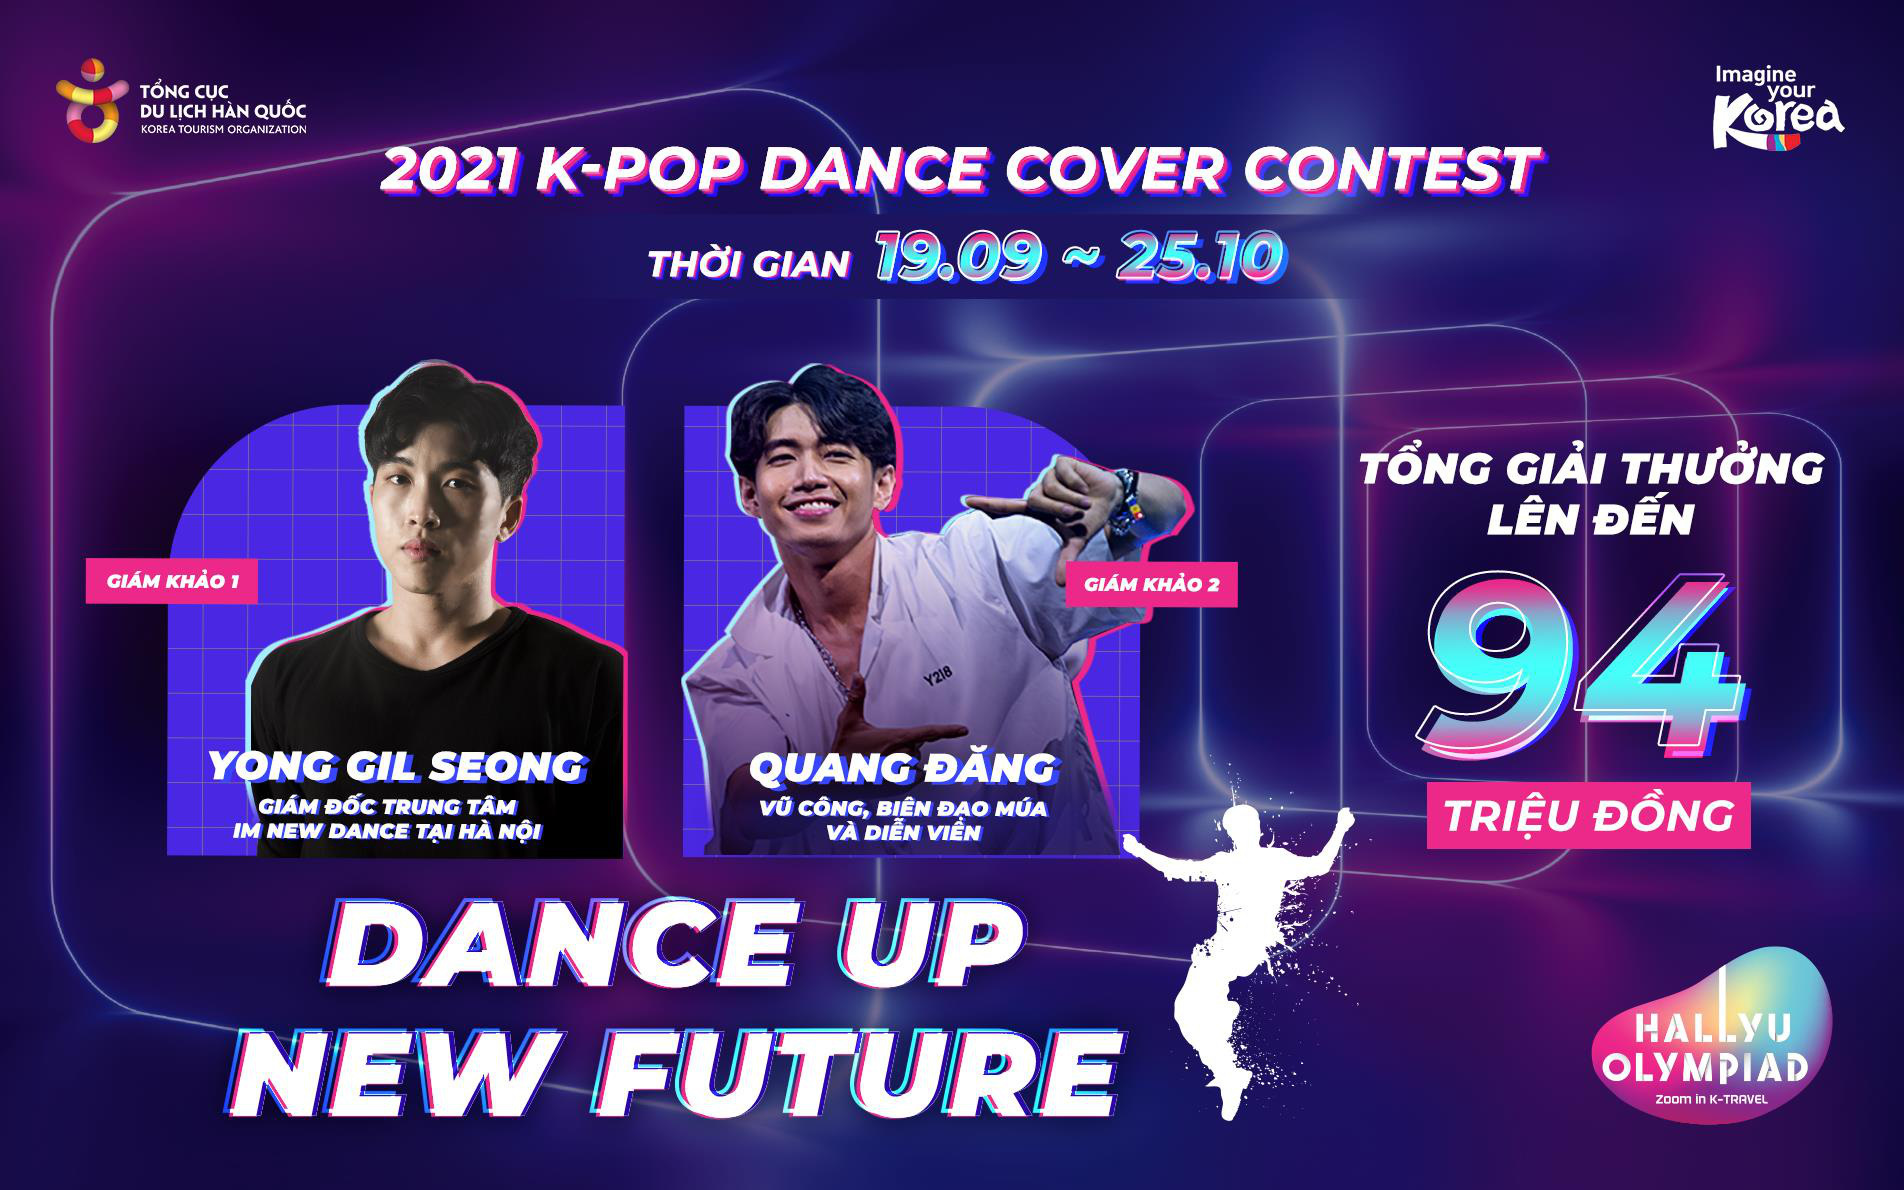 DANCE UP NEW FUTURE 2021 K-Pop Dance Cover Contest: Bùng nổ từ các nhóm nhảy trong chặng cuối